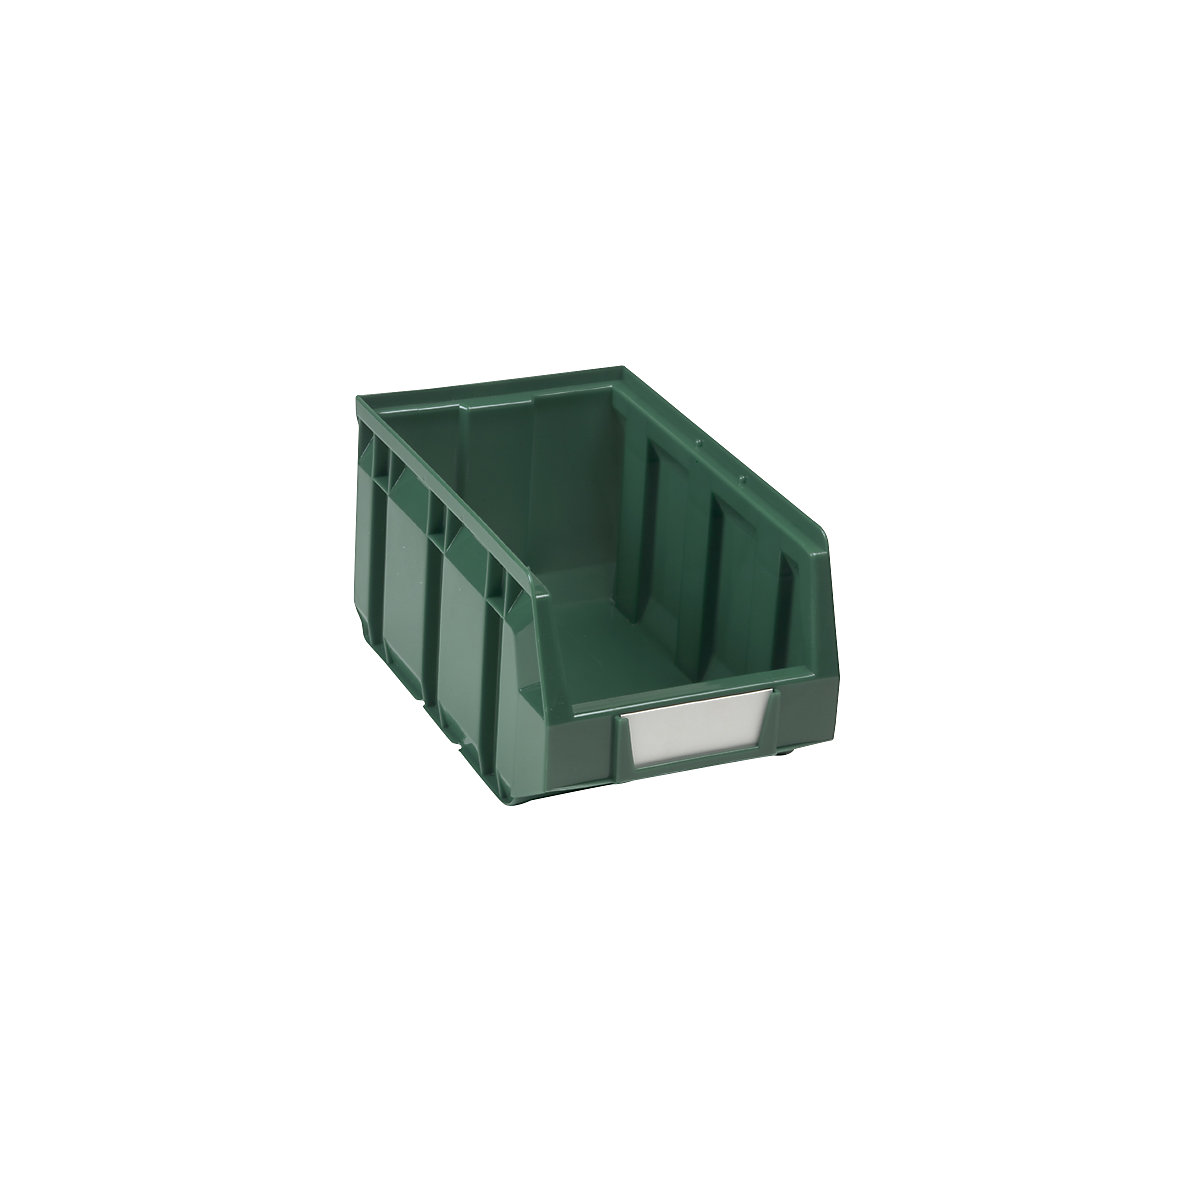 Otvorena skladišna kutija od polietilena, DxŠxV 237 x 144 x 123 mm, u zelenoj boji, pak. 38 kom.-10